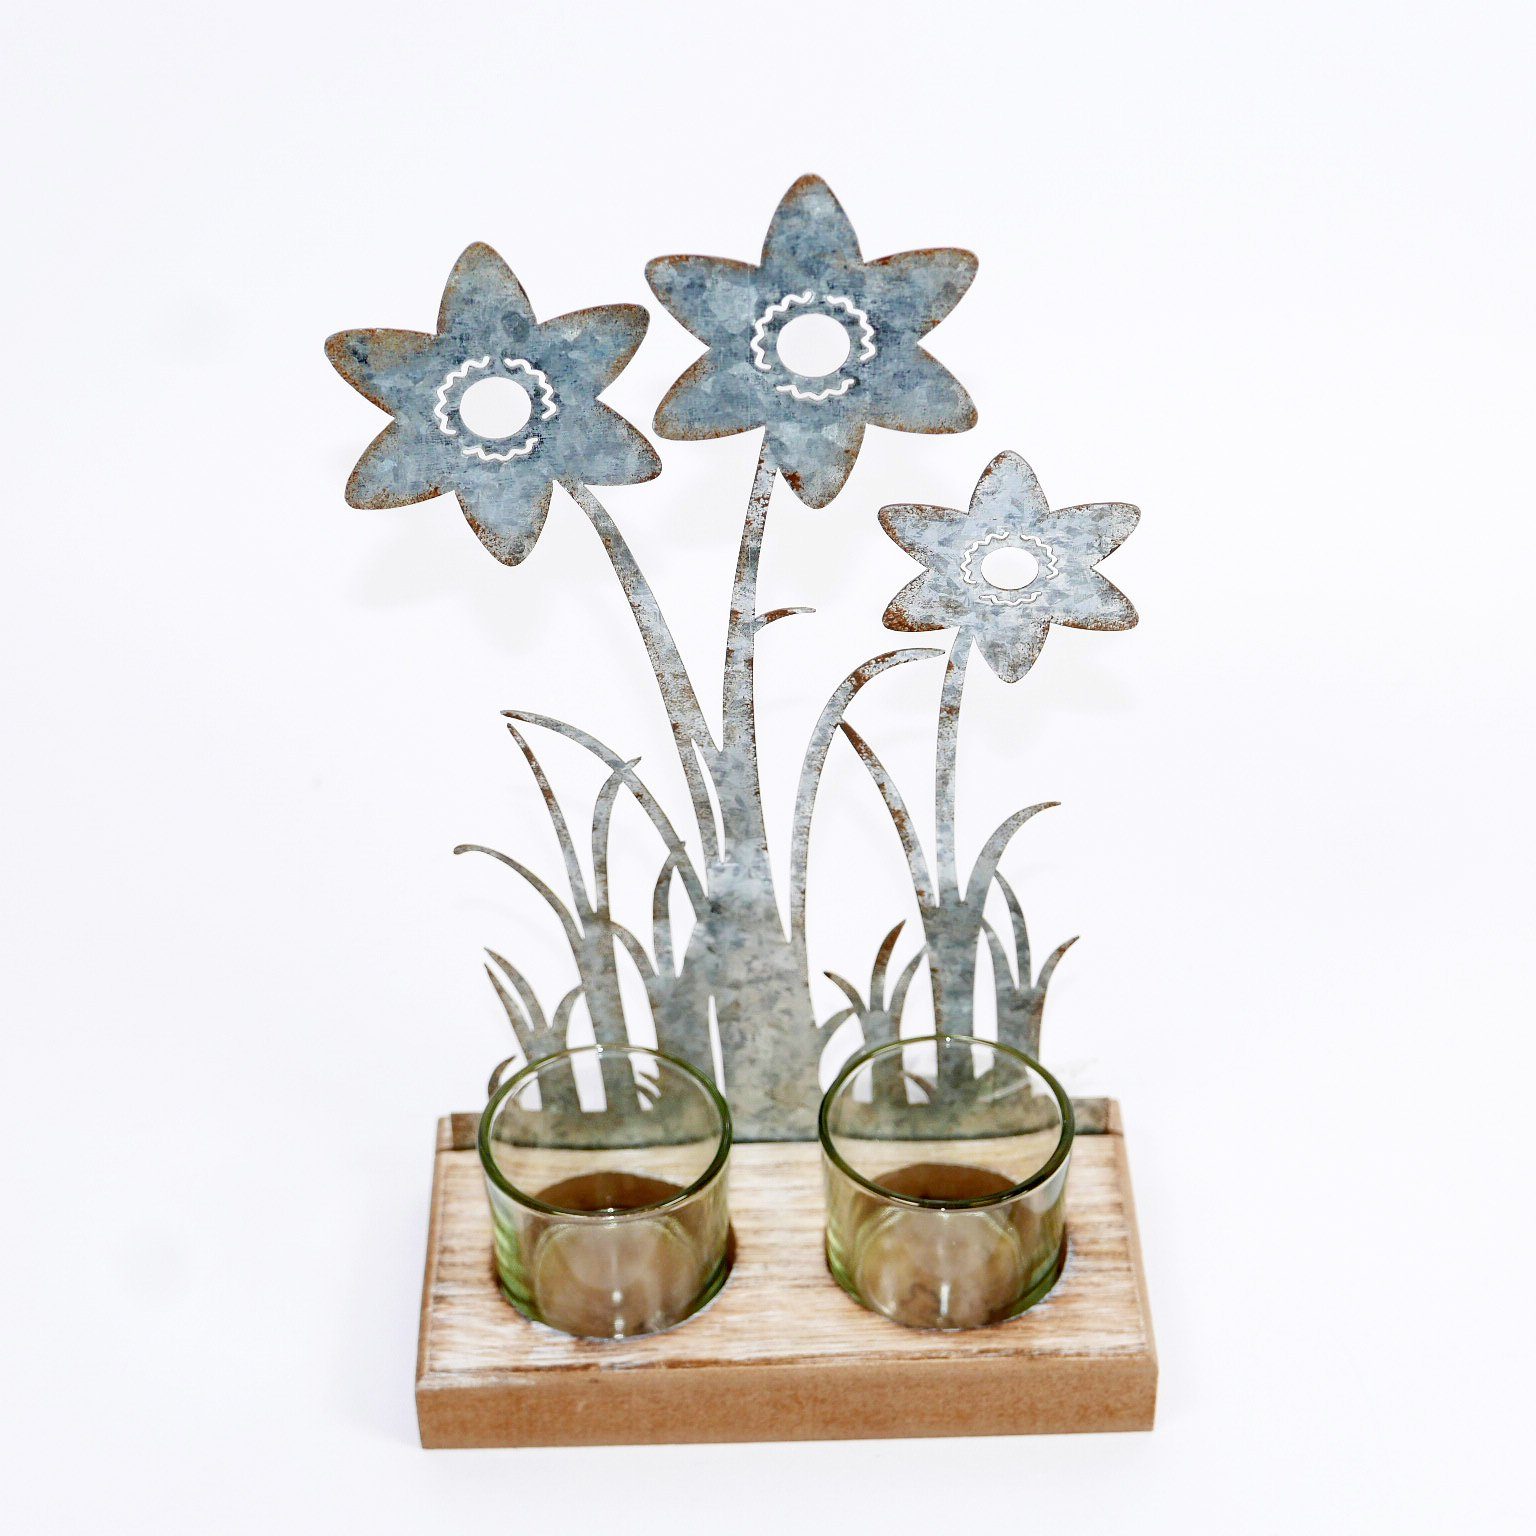 B&S Teelichthalter Teelichtglas 2er auf Holzsockel - Blumenverzierung aus Metall H 23 cm | Teelichthalter